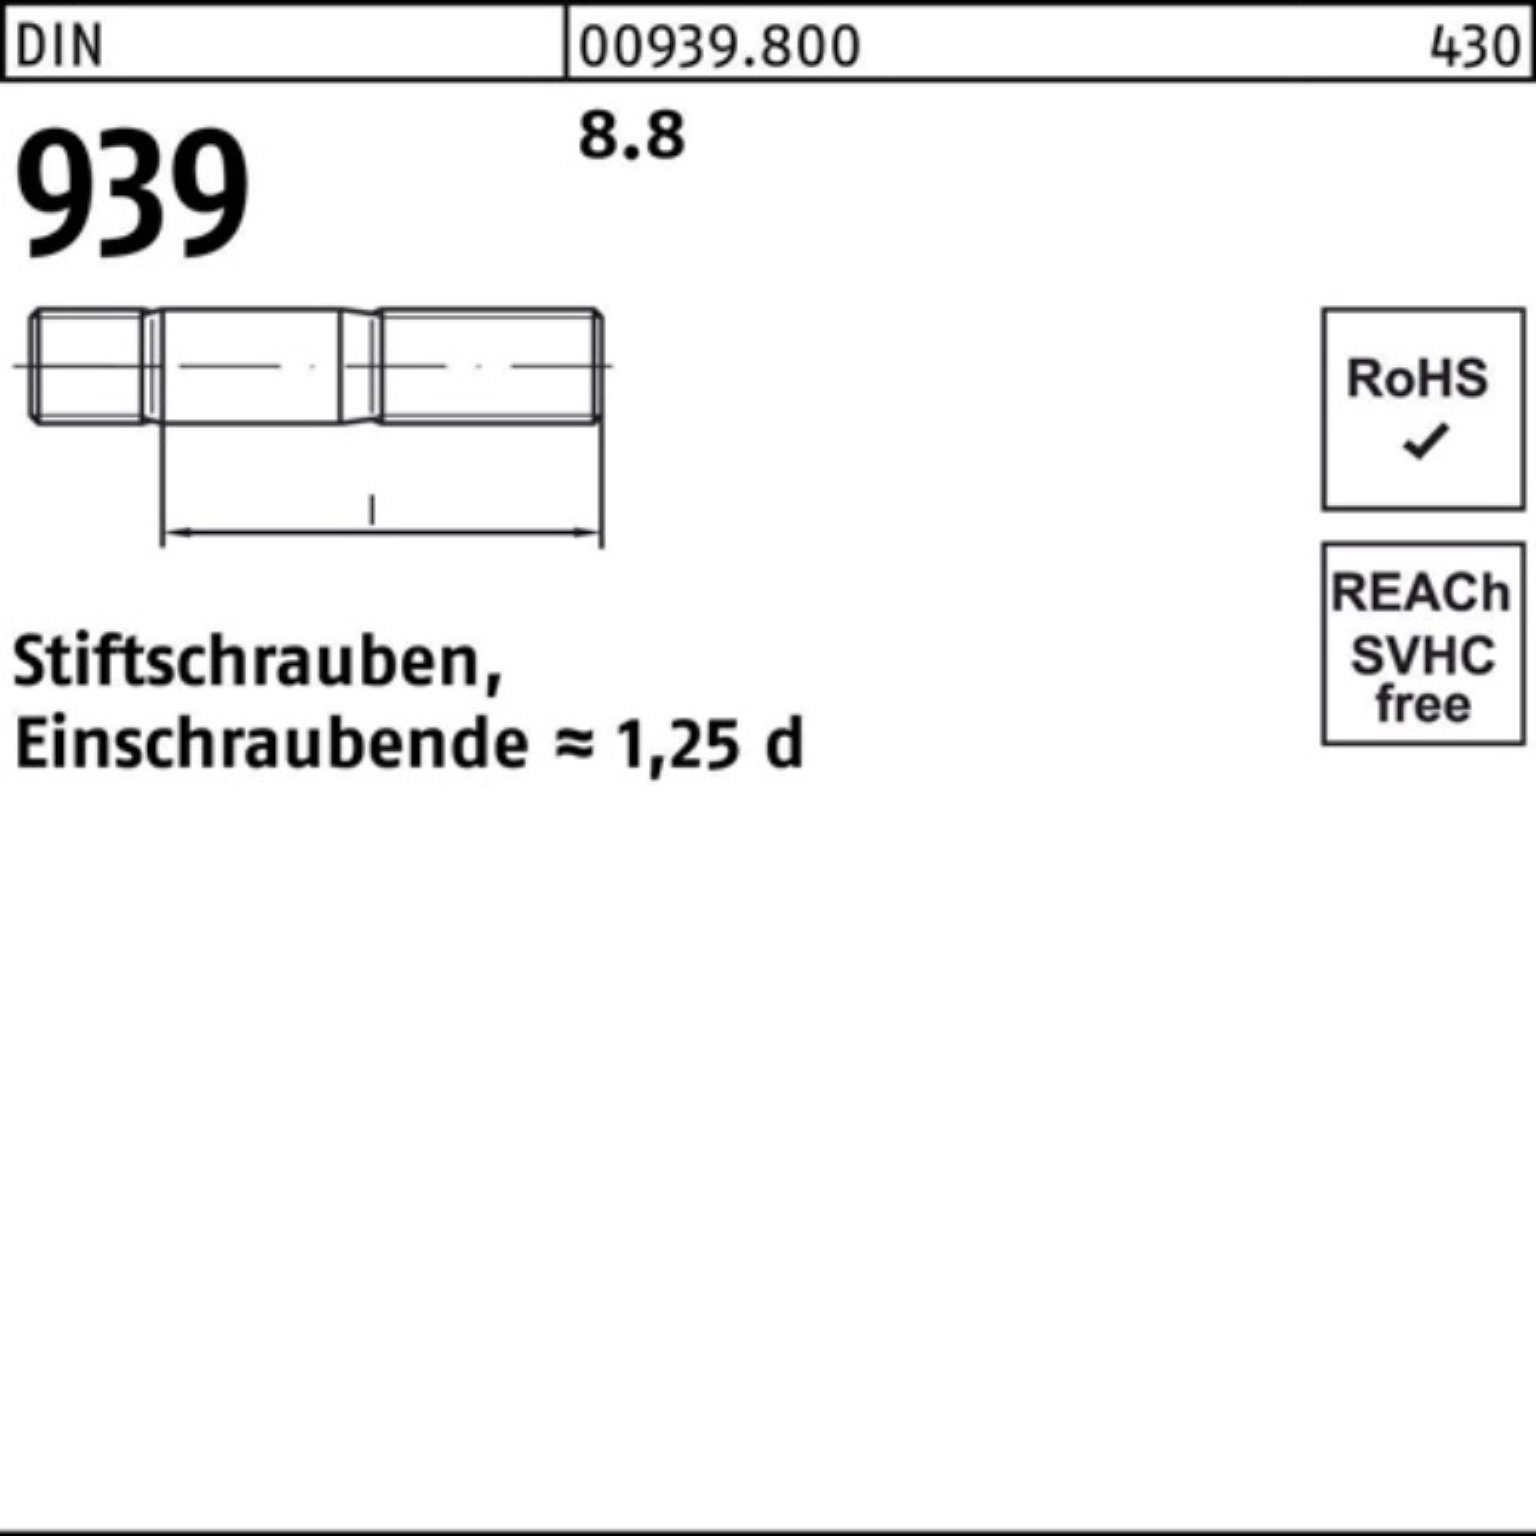 55 939 Pack S Stiftschraube 25 Reyher 100er Stiftschraube M12x DIN Einschraubende=1,25d 8.8